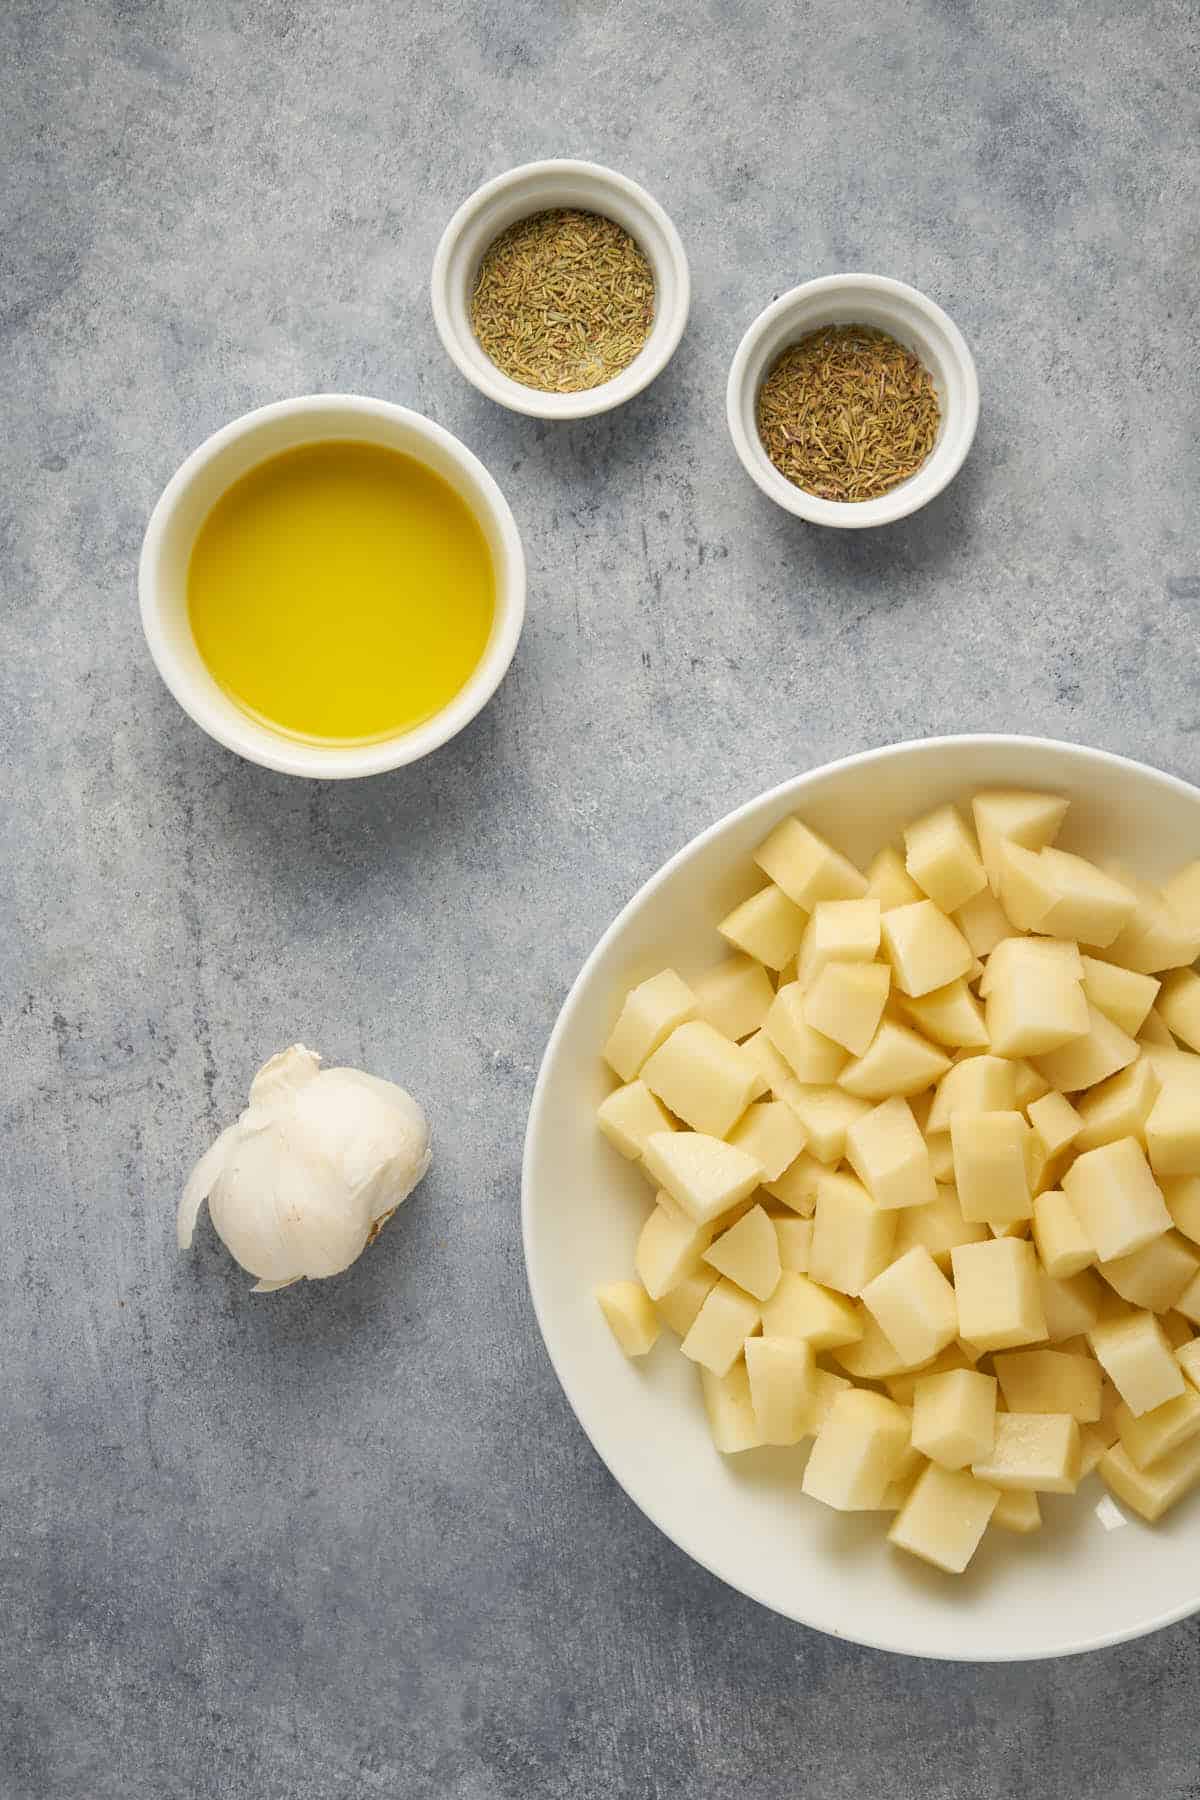 Ingredients to make homemade potato cubes.